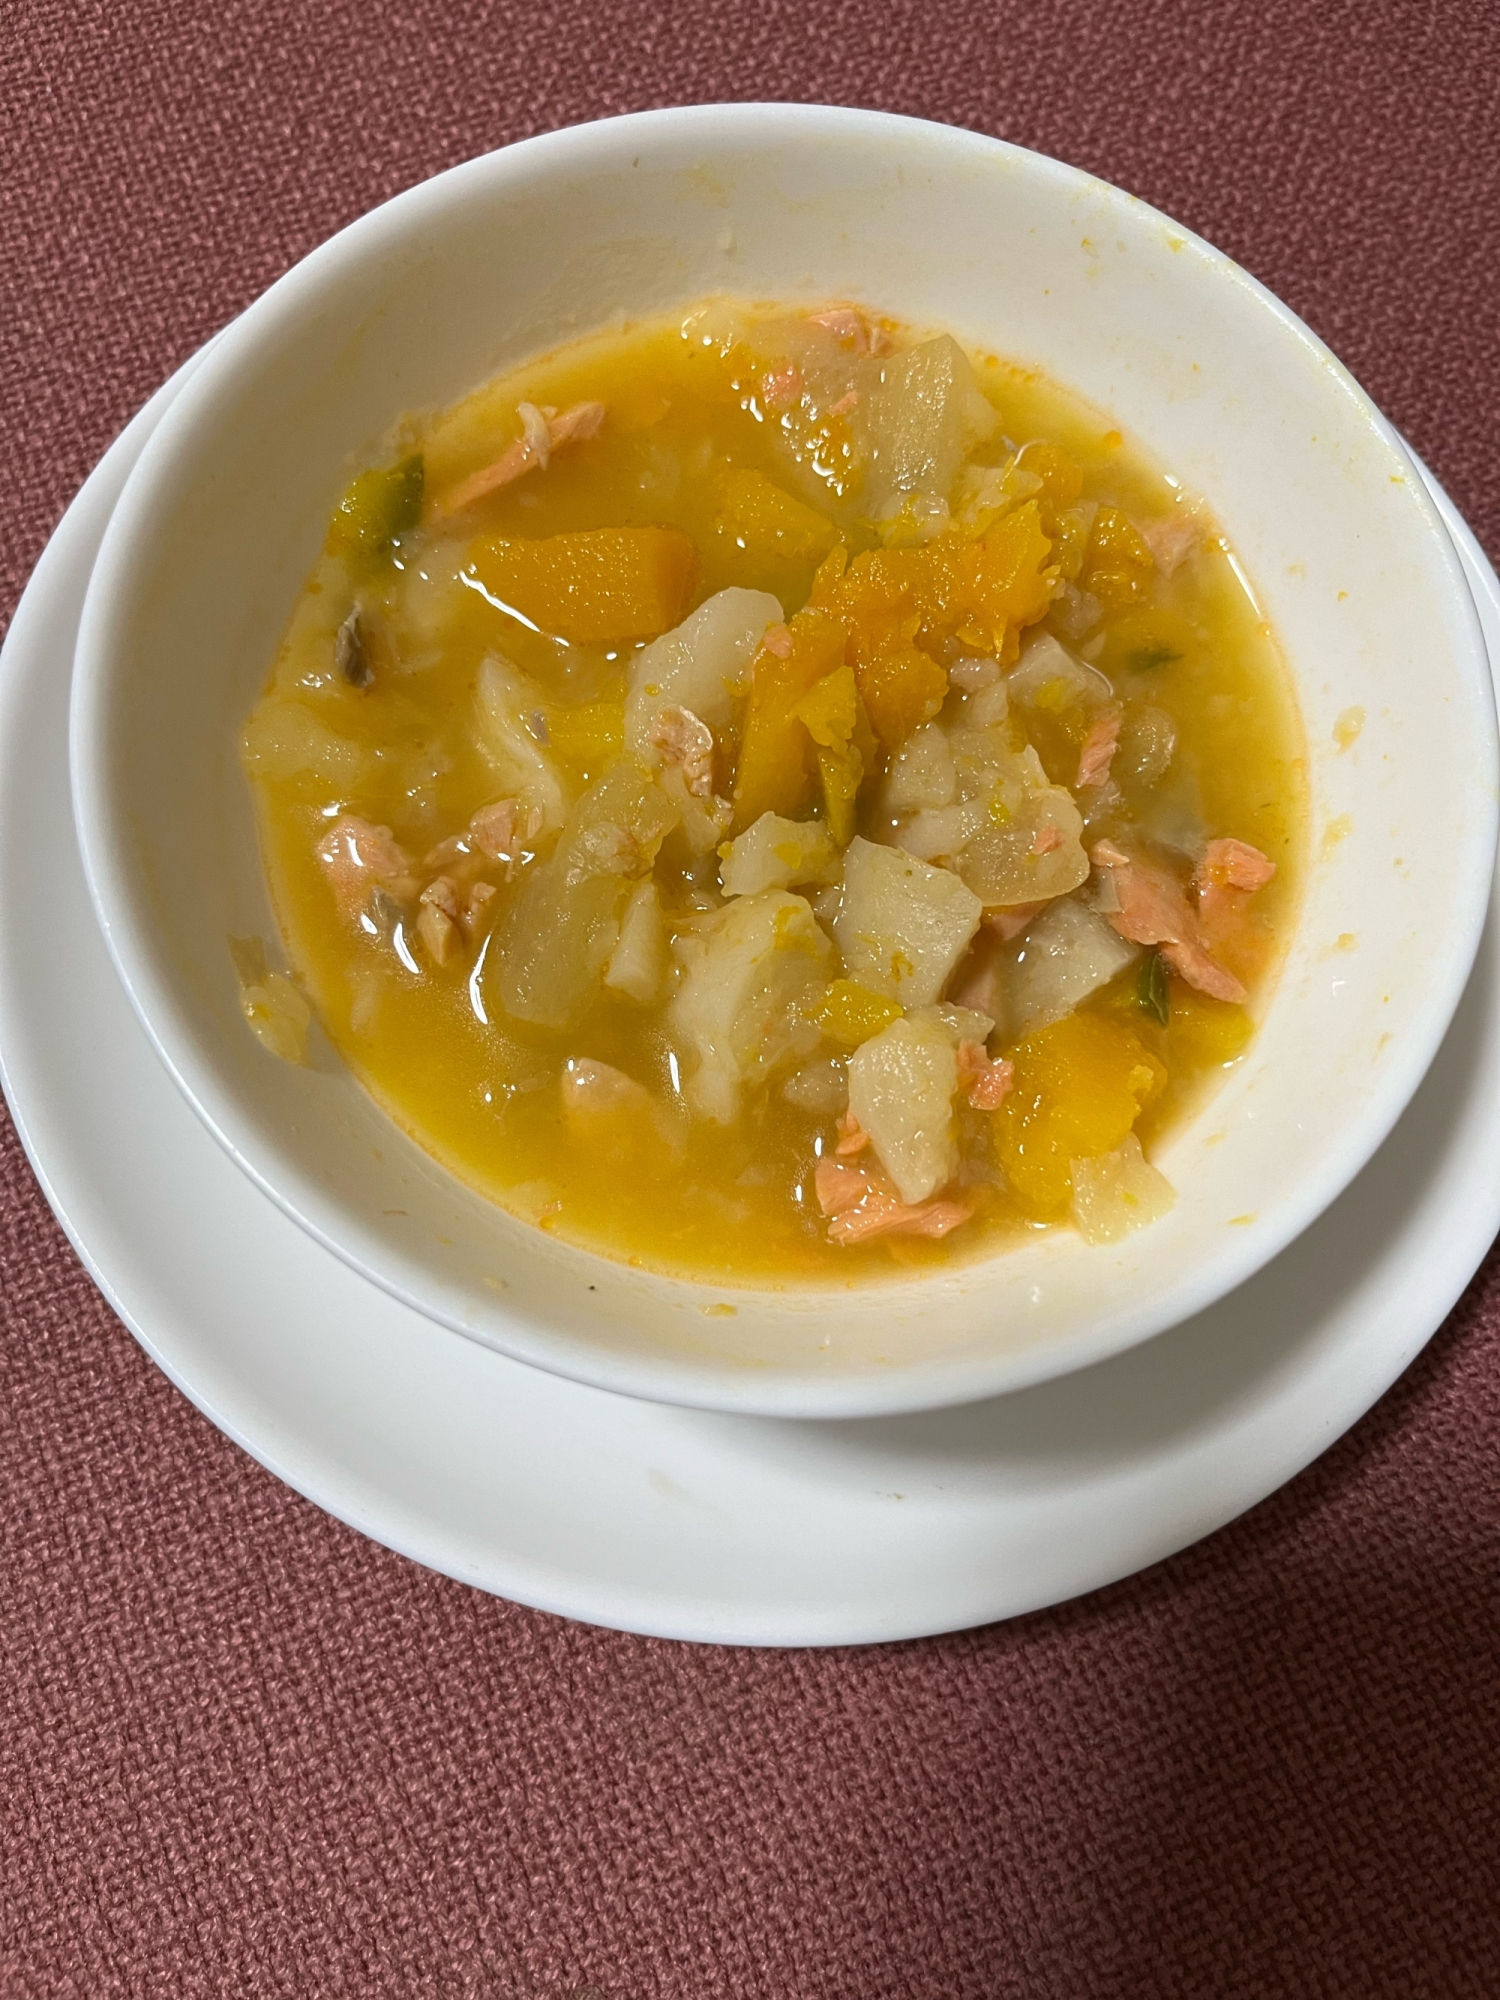 かぶと冬瓜のスープ